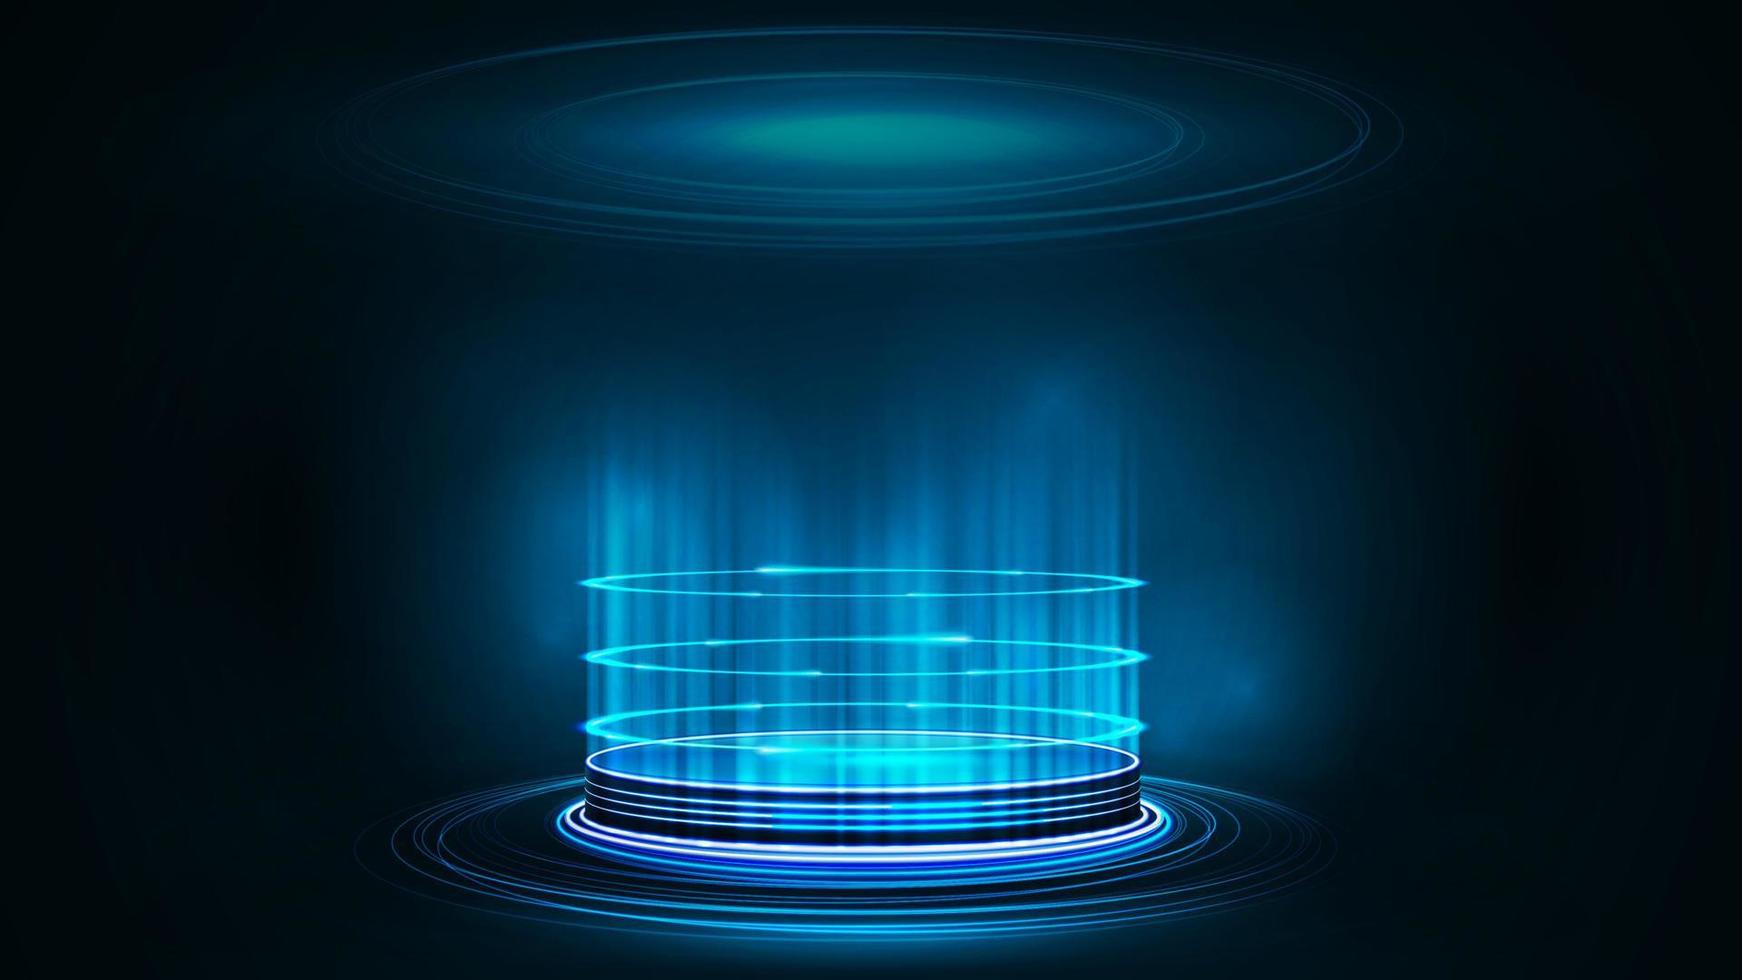 leeg blauw digitaal hologrampodium met deeltjes en glanzende ringen in donkere ruimte. donkere en blauwe digitale scène vector